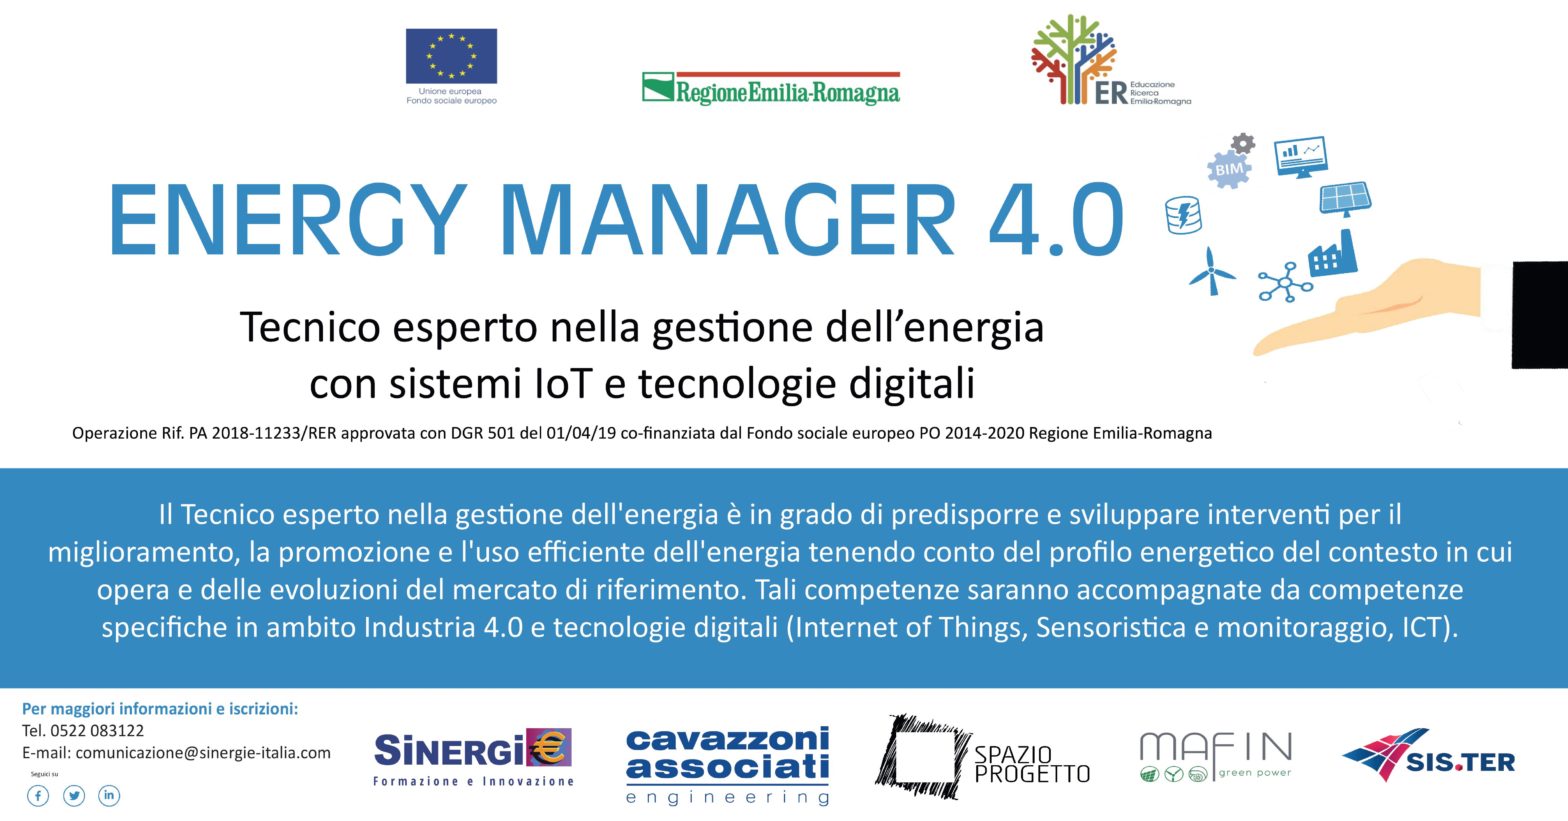 ENERGY MANAGER 4.0 - Tecnico esperto nella gestione dell’energia con sistemi IoT e tecnologie digitali